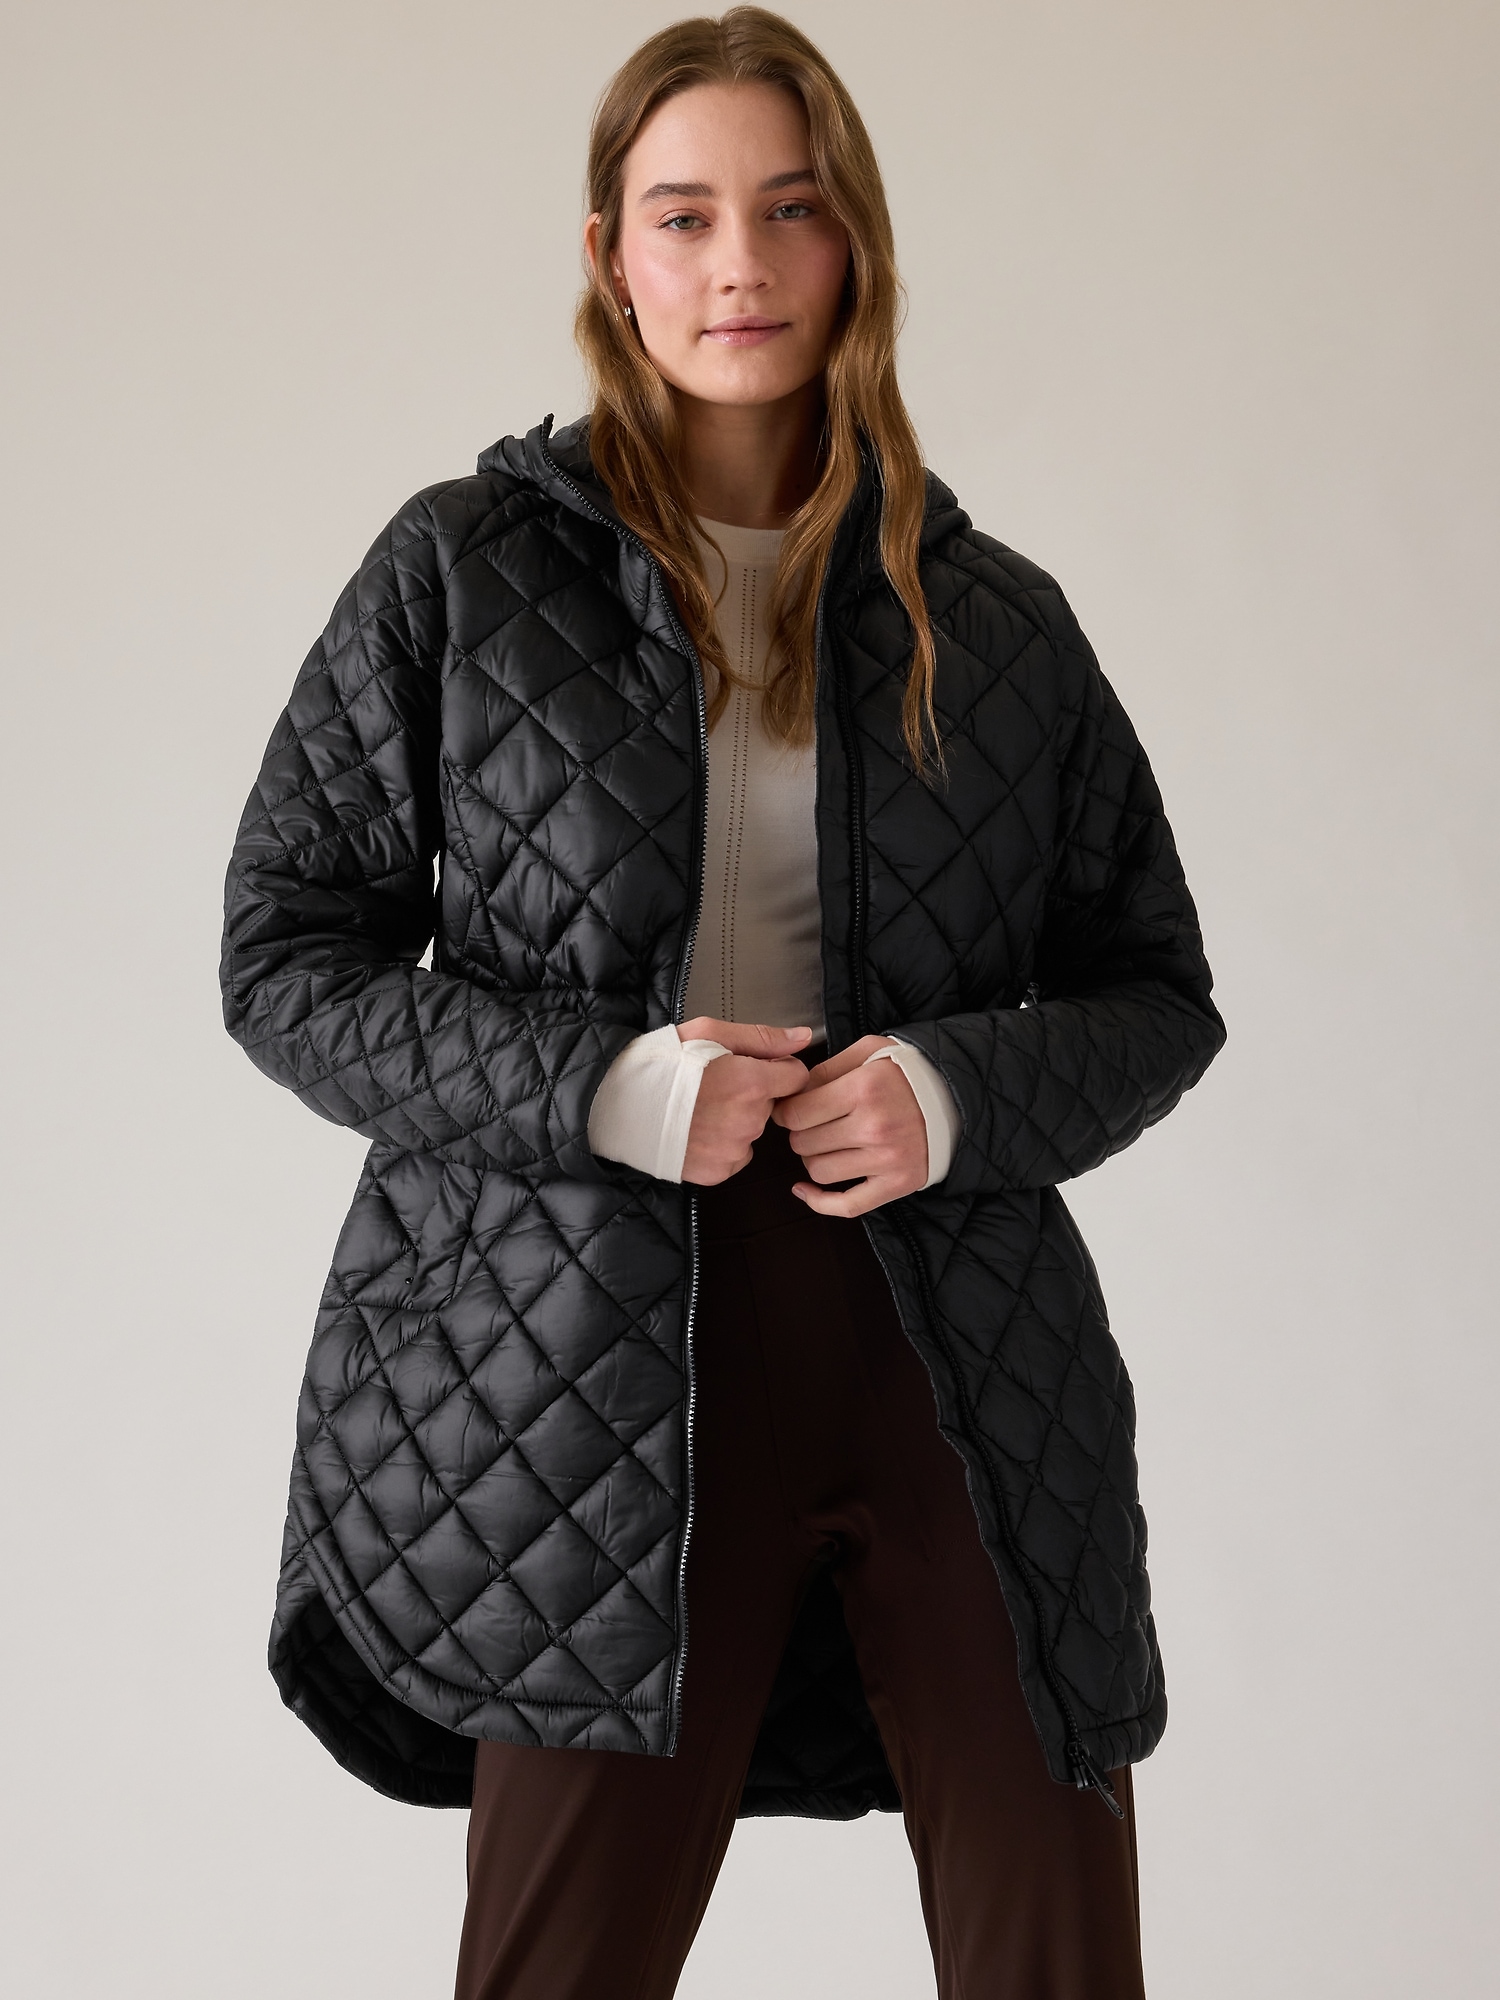 Mountain Warehouse Seasons Womens Padded Jacket - Winter Warm Coat Beige 0